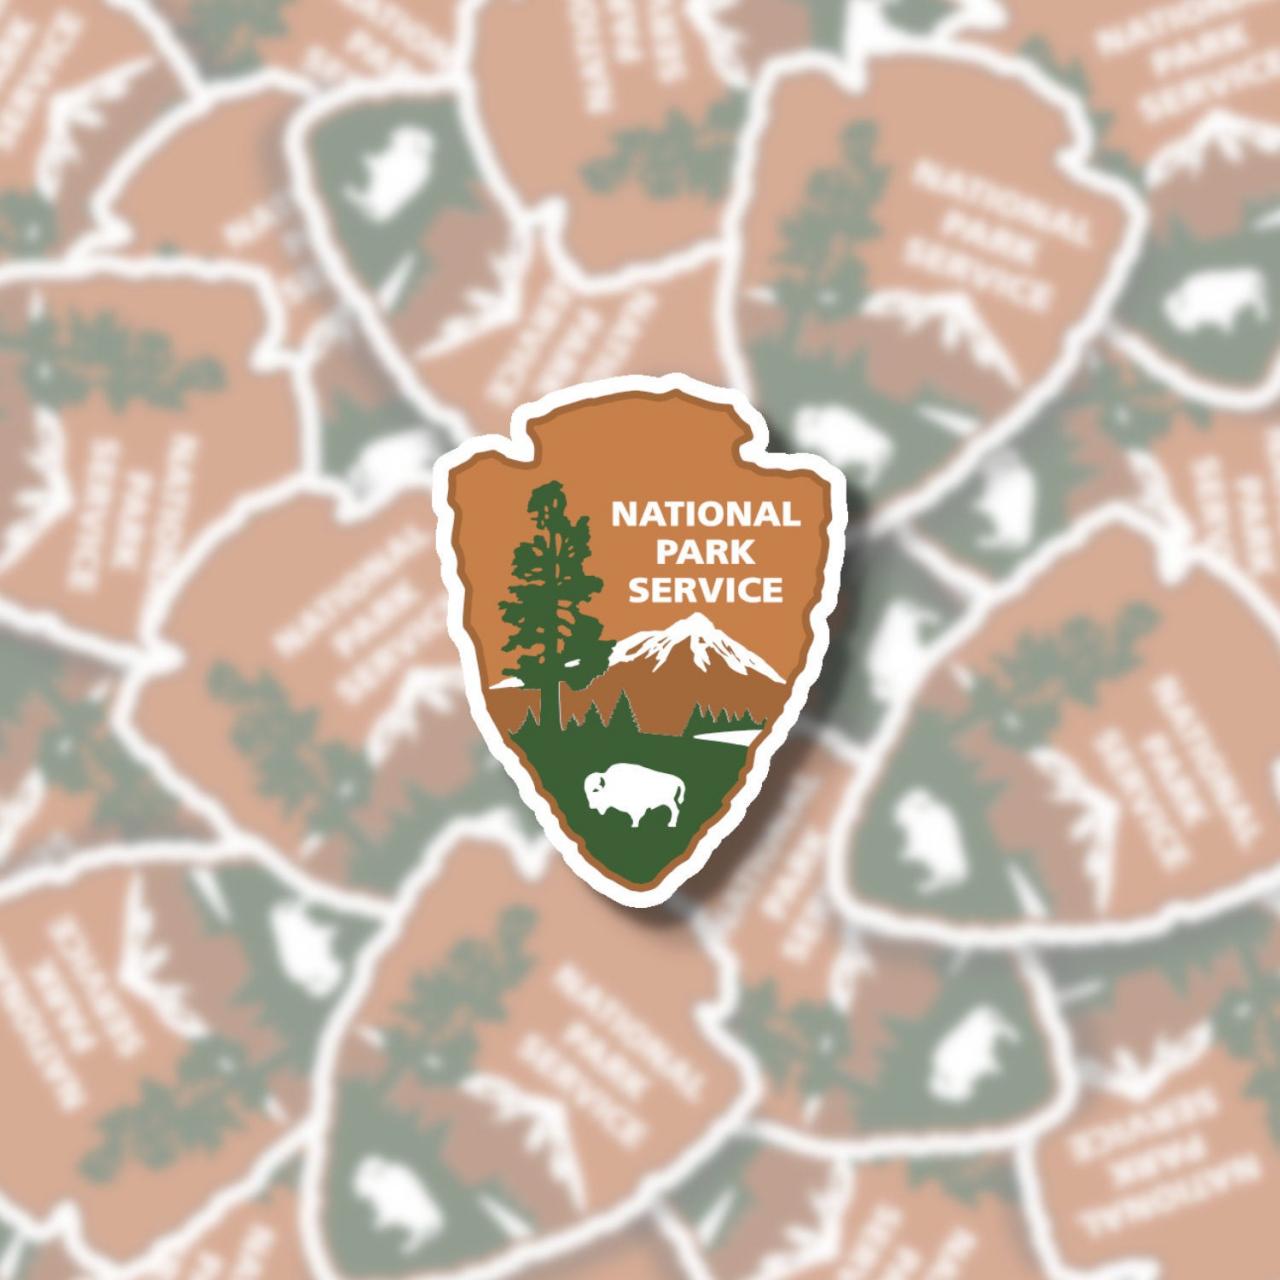 National Park Service Sticker | Nps Sticker | Hiking Sticker | Outdoor Sticker | Laptop Sticker | Water Bottle Sticker | Planner Sticker